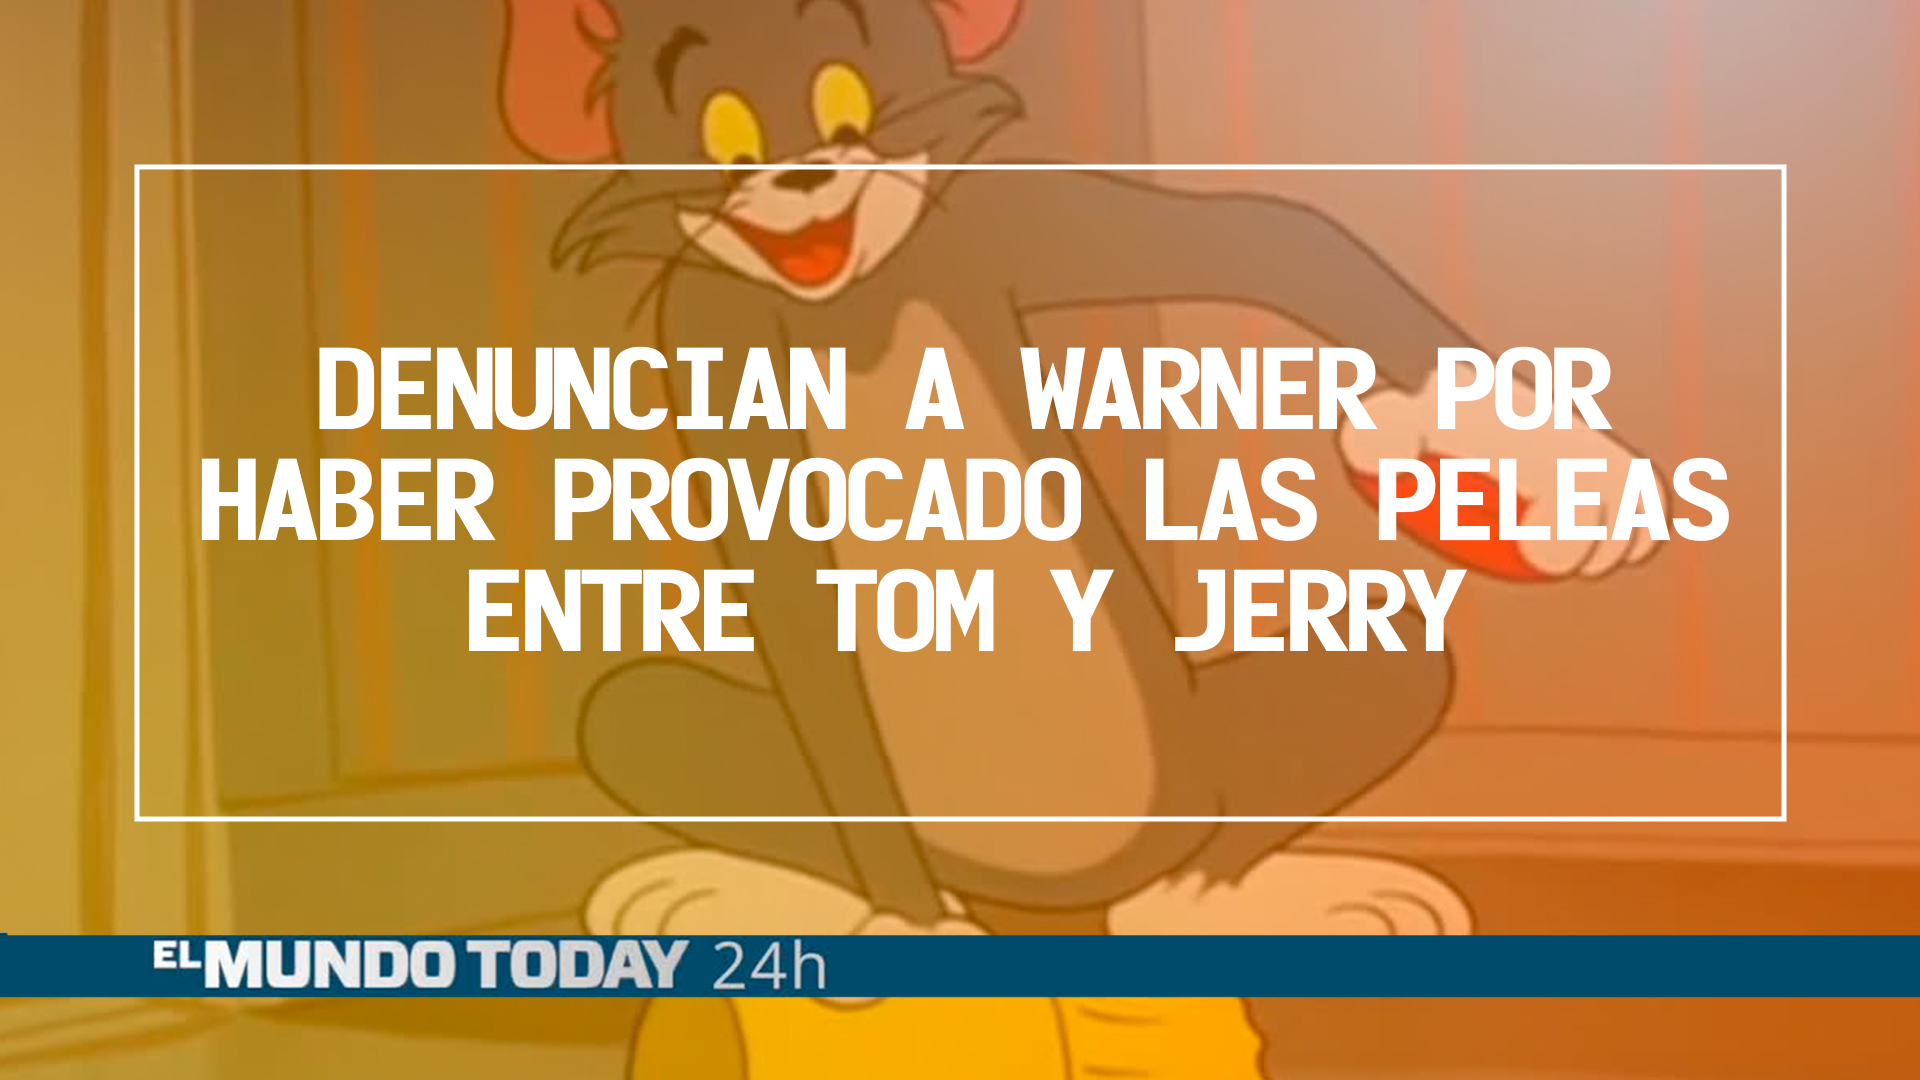 Temporada 1 Denuncian a Warner por haber provocado intencionadamente las peleas entre Tom y Jerry